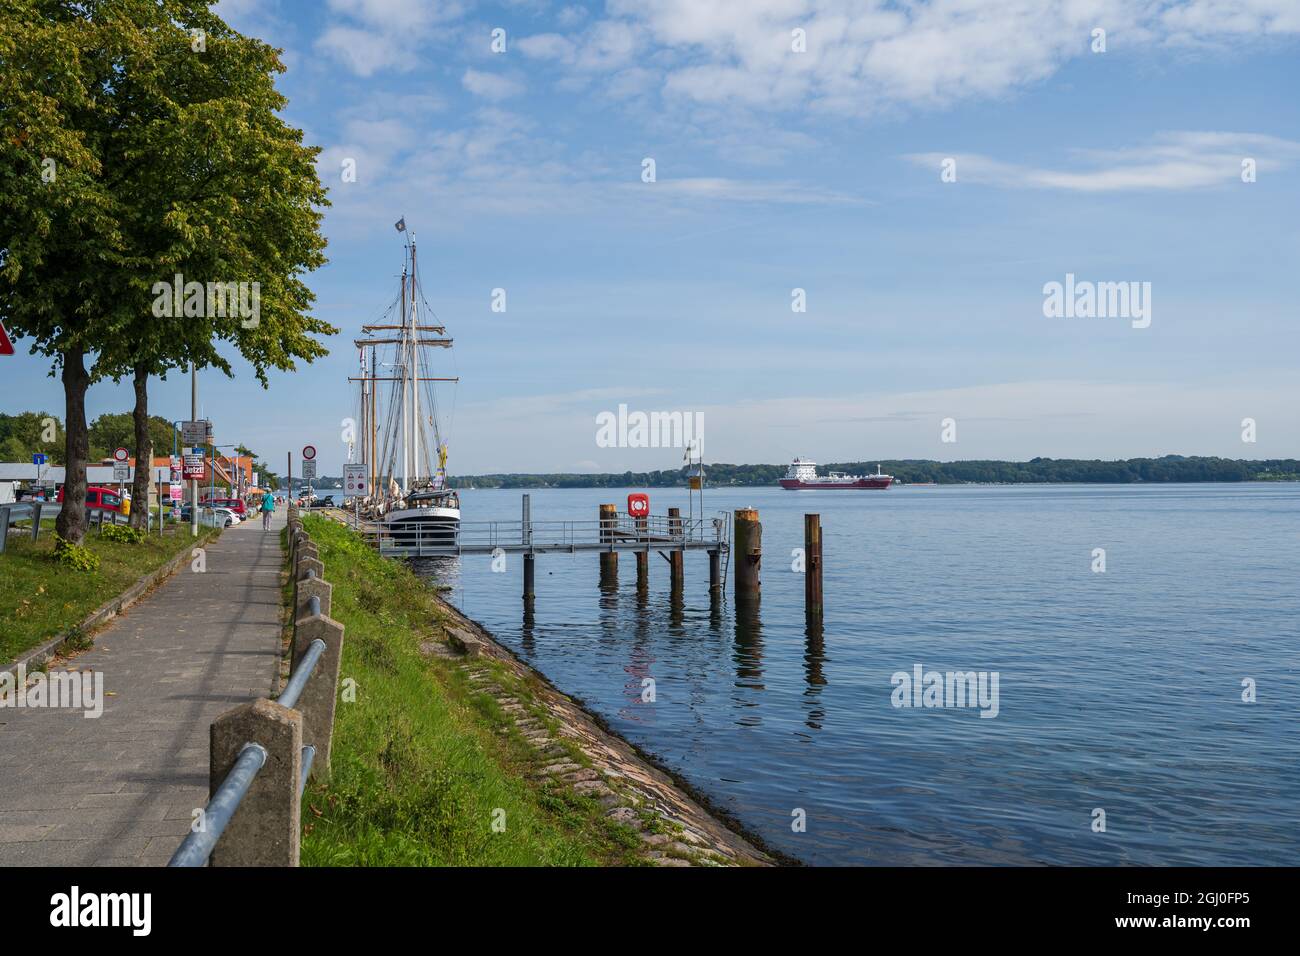 Blick aus dem Bereich alte Schleuse Holtenau. Großsegelschiffe am Tiessenkai und ein Tankschiff auf dem Weg in den Kanal Foto Stock